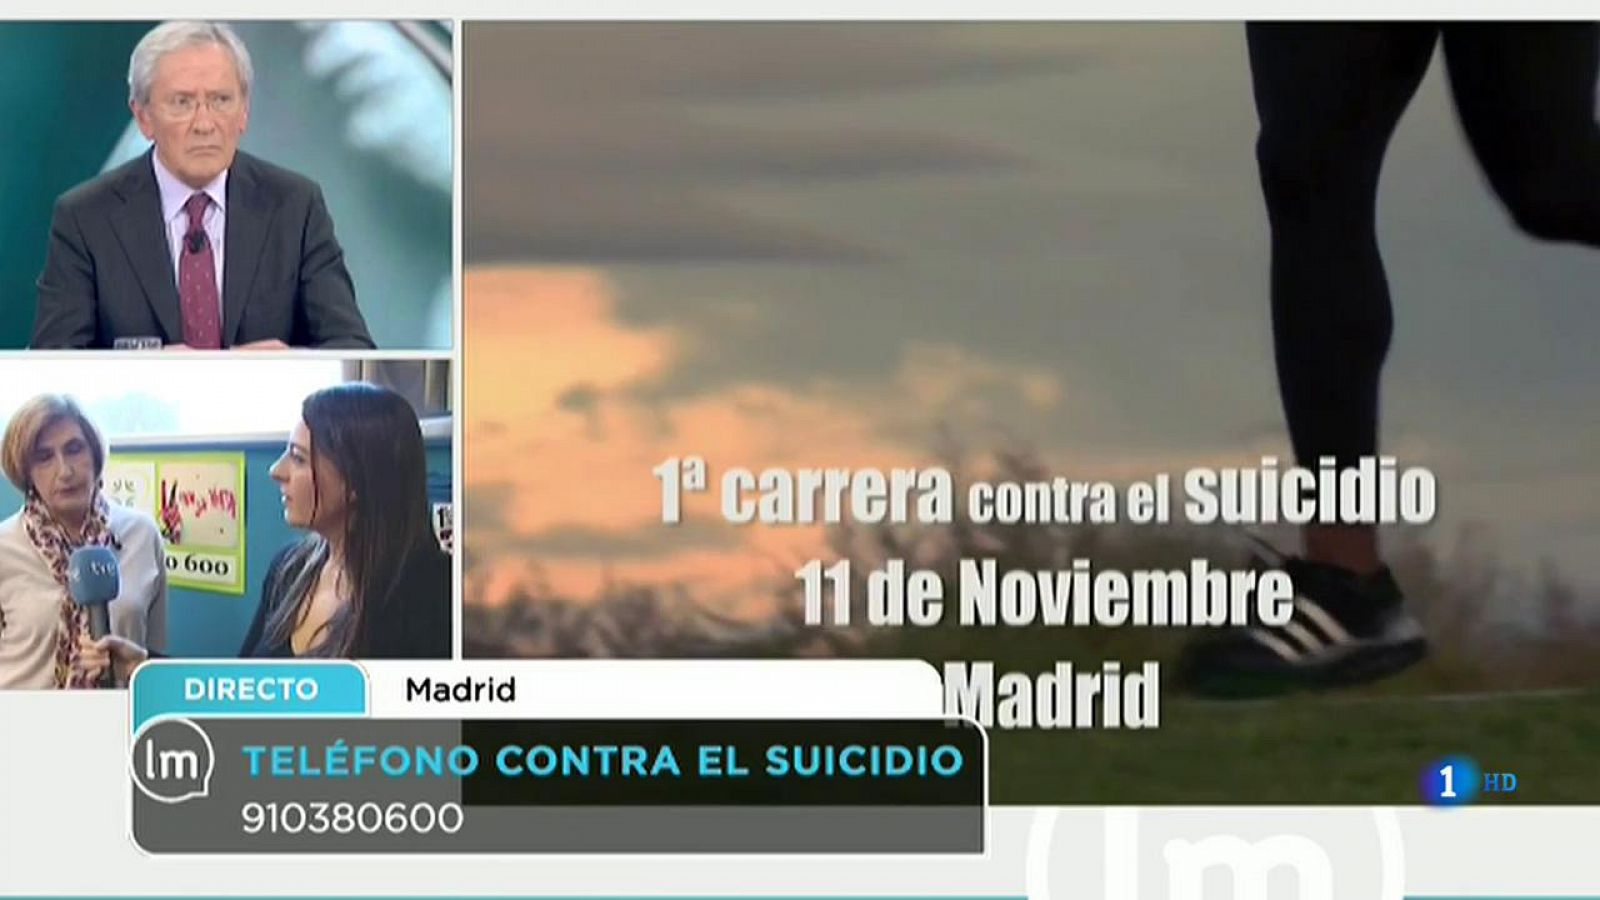 La Mañana - Madrid celebra la primera carrera contra el suicidio